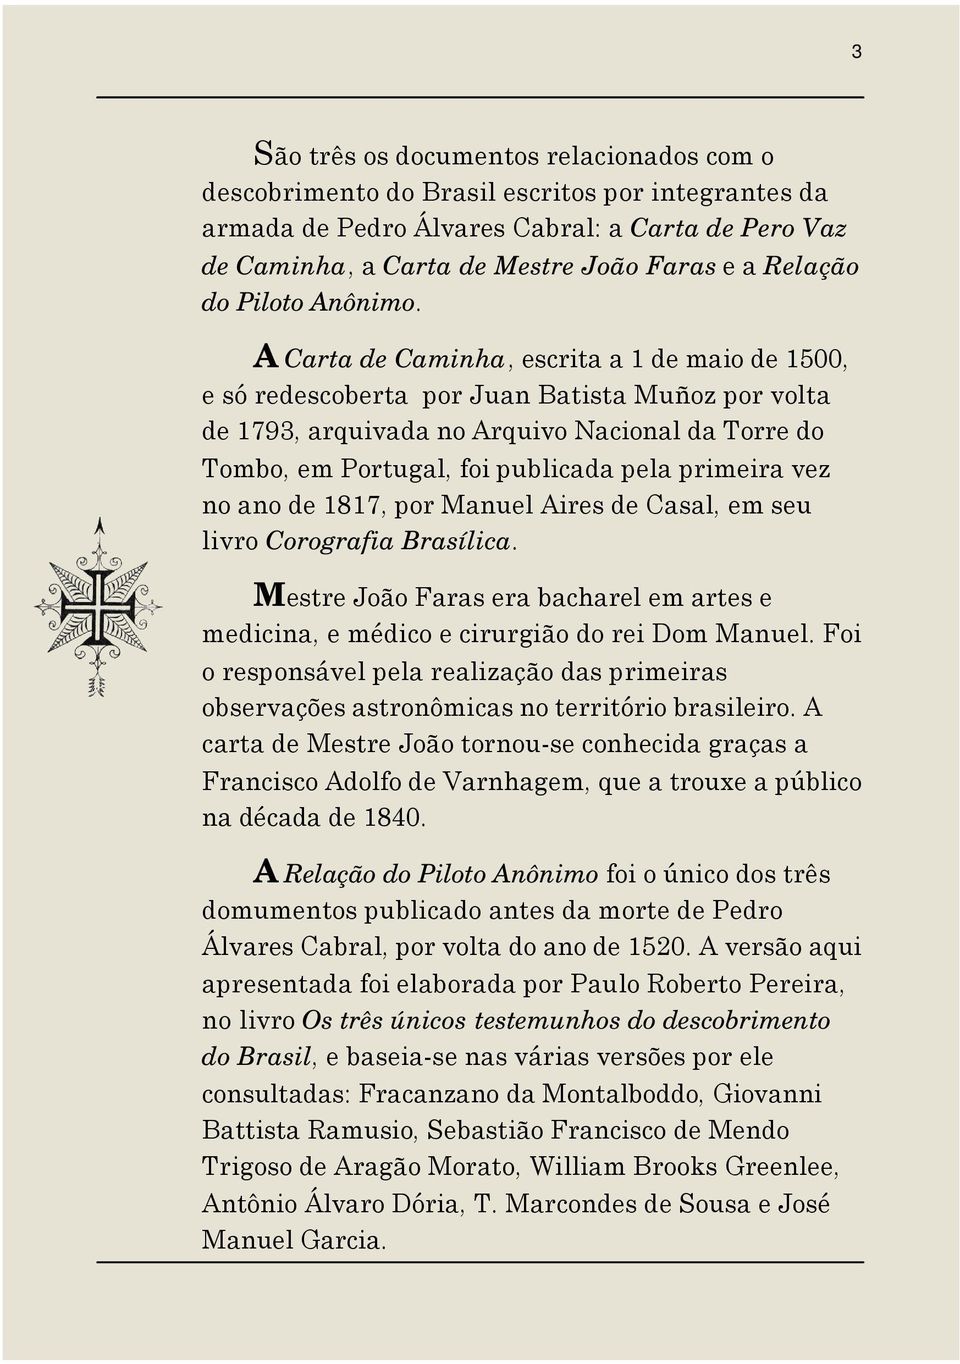 A Carta de Caminha, escrita a 1 de maio de 1500, e só redescoberta por Juan Batista Muñoz por volta de 1793, arquivada no Arquivo Nacional da Torre do Tombo, em Portugal, foi publicada pela primeira